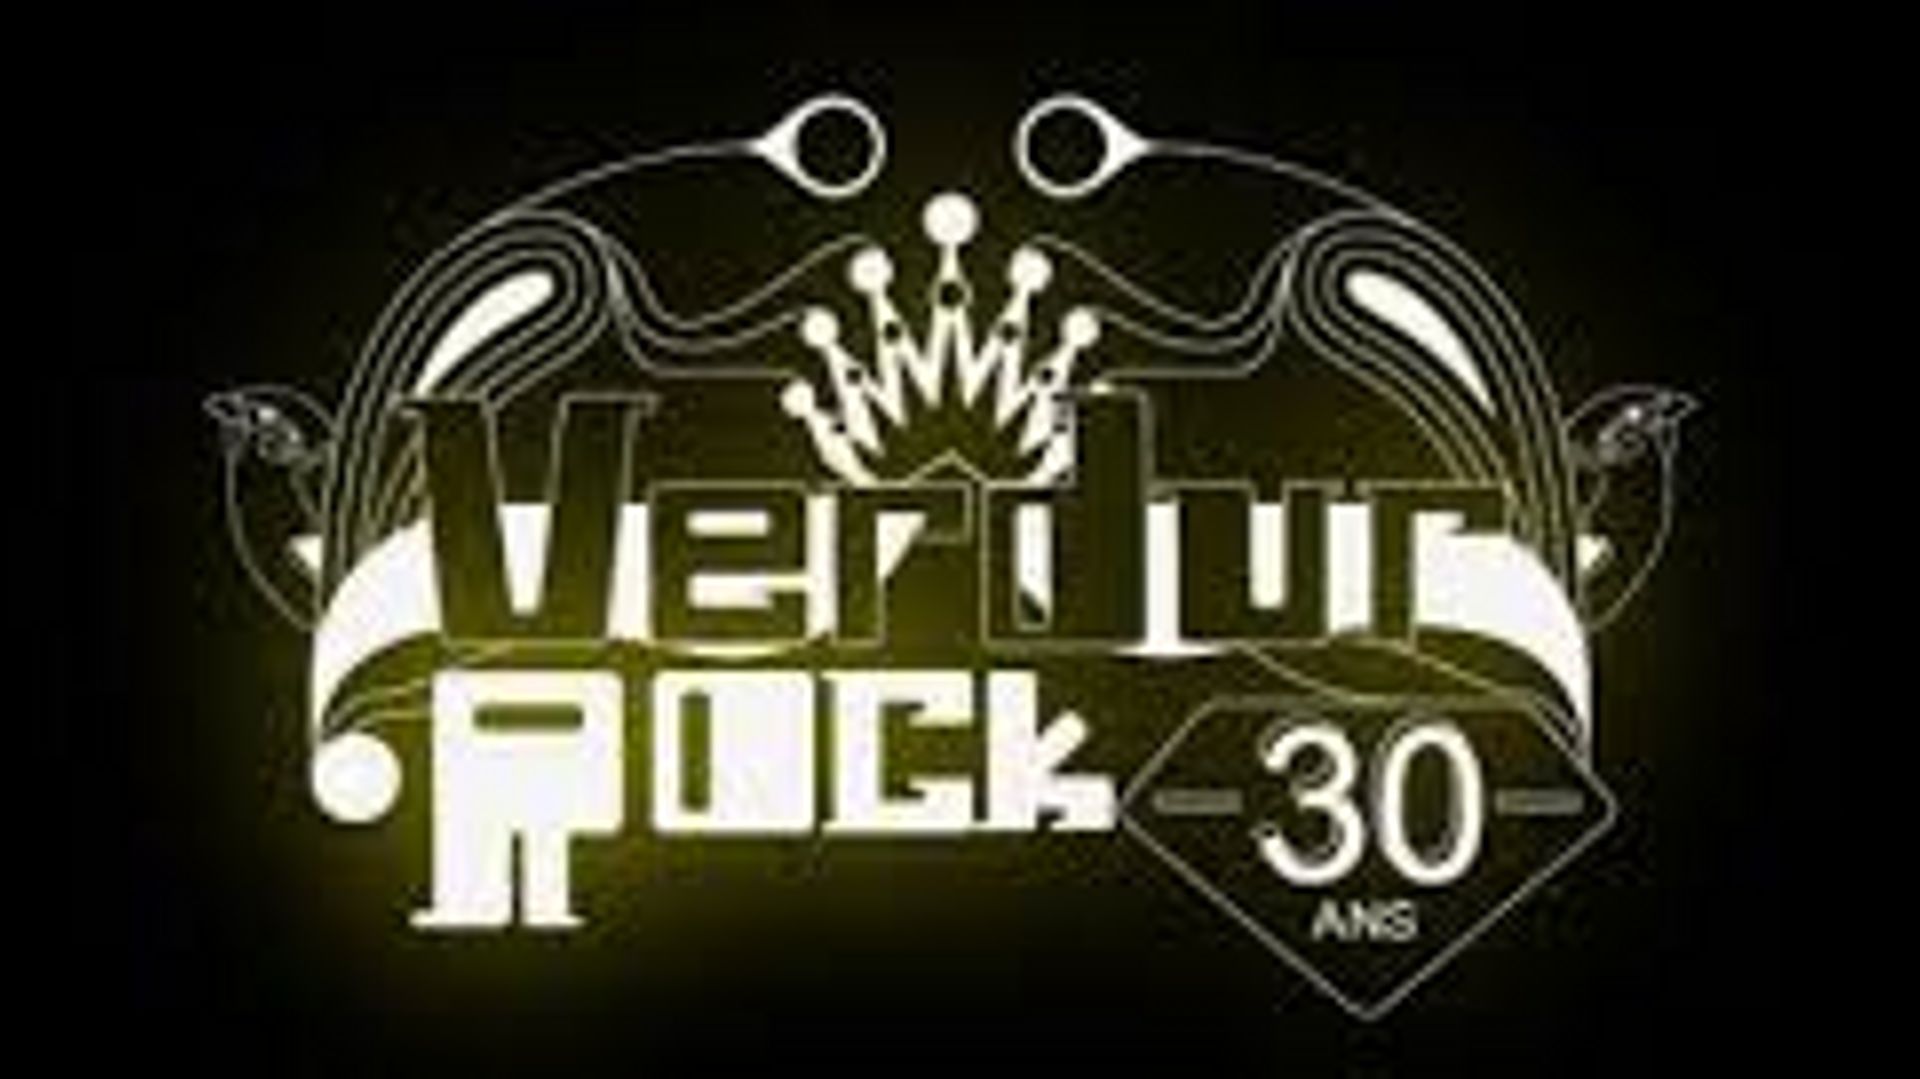 Le 30e Verdur Rock aura lieu le 28 juin à la Citadelle de Namur